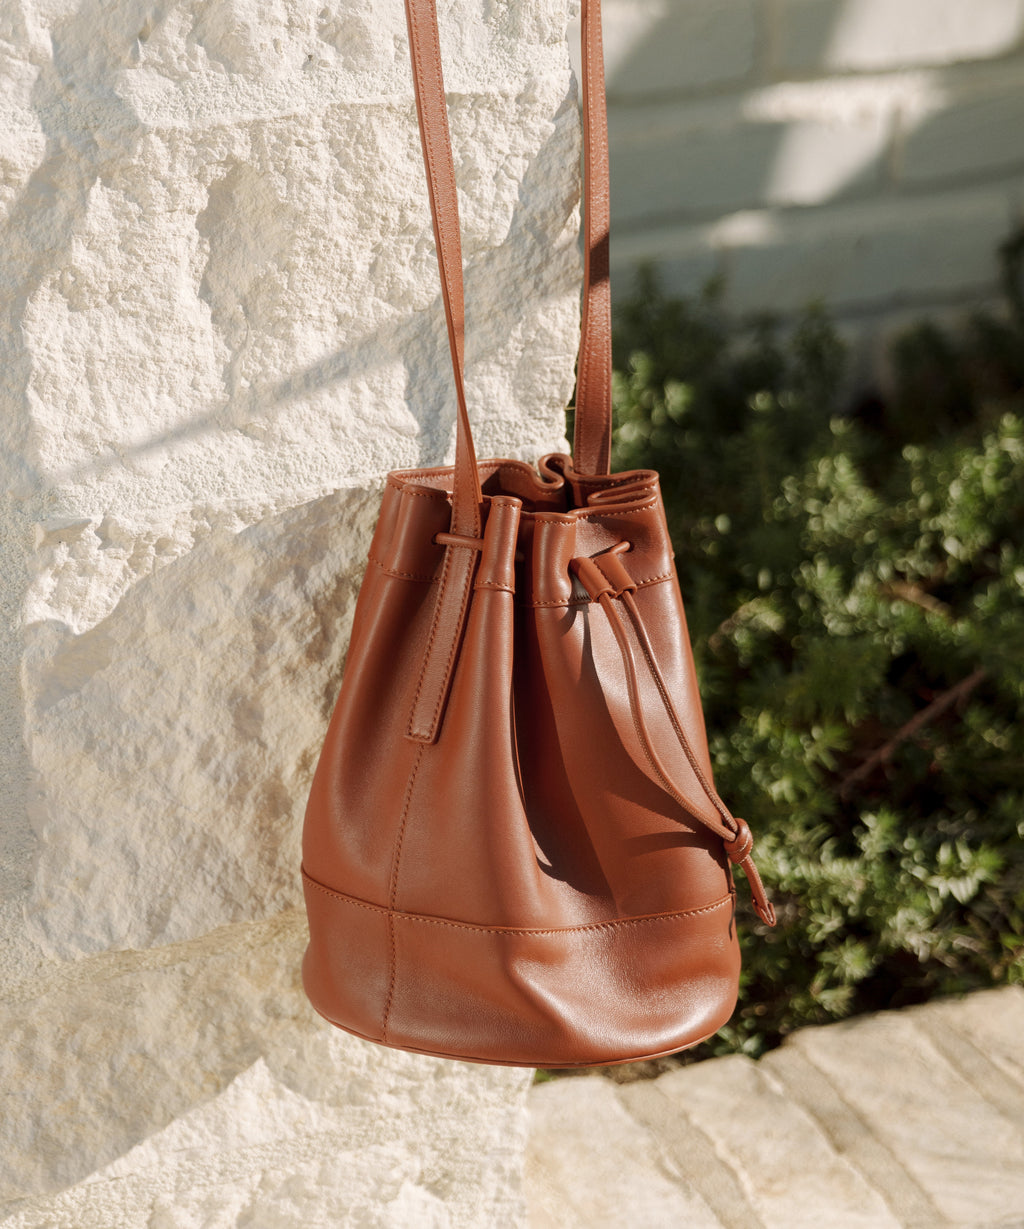 Stylish new Italian Saddle Bag, the Palio, in gorgeous soft tumbled leather  - CountryClubuk